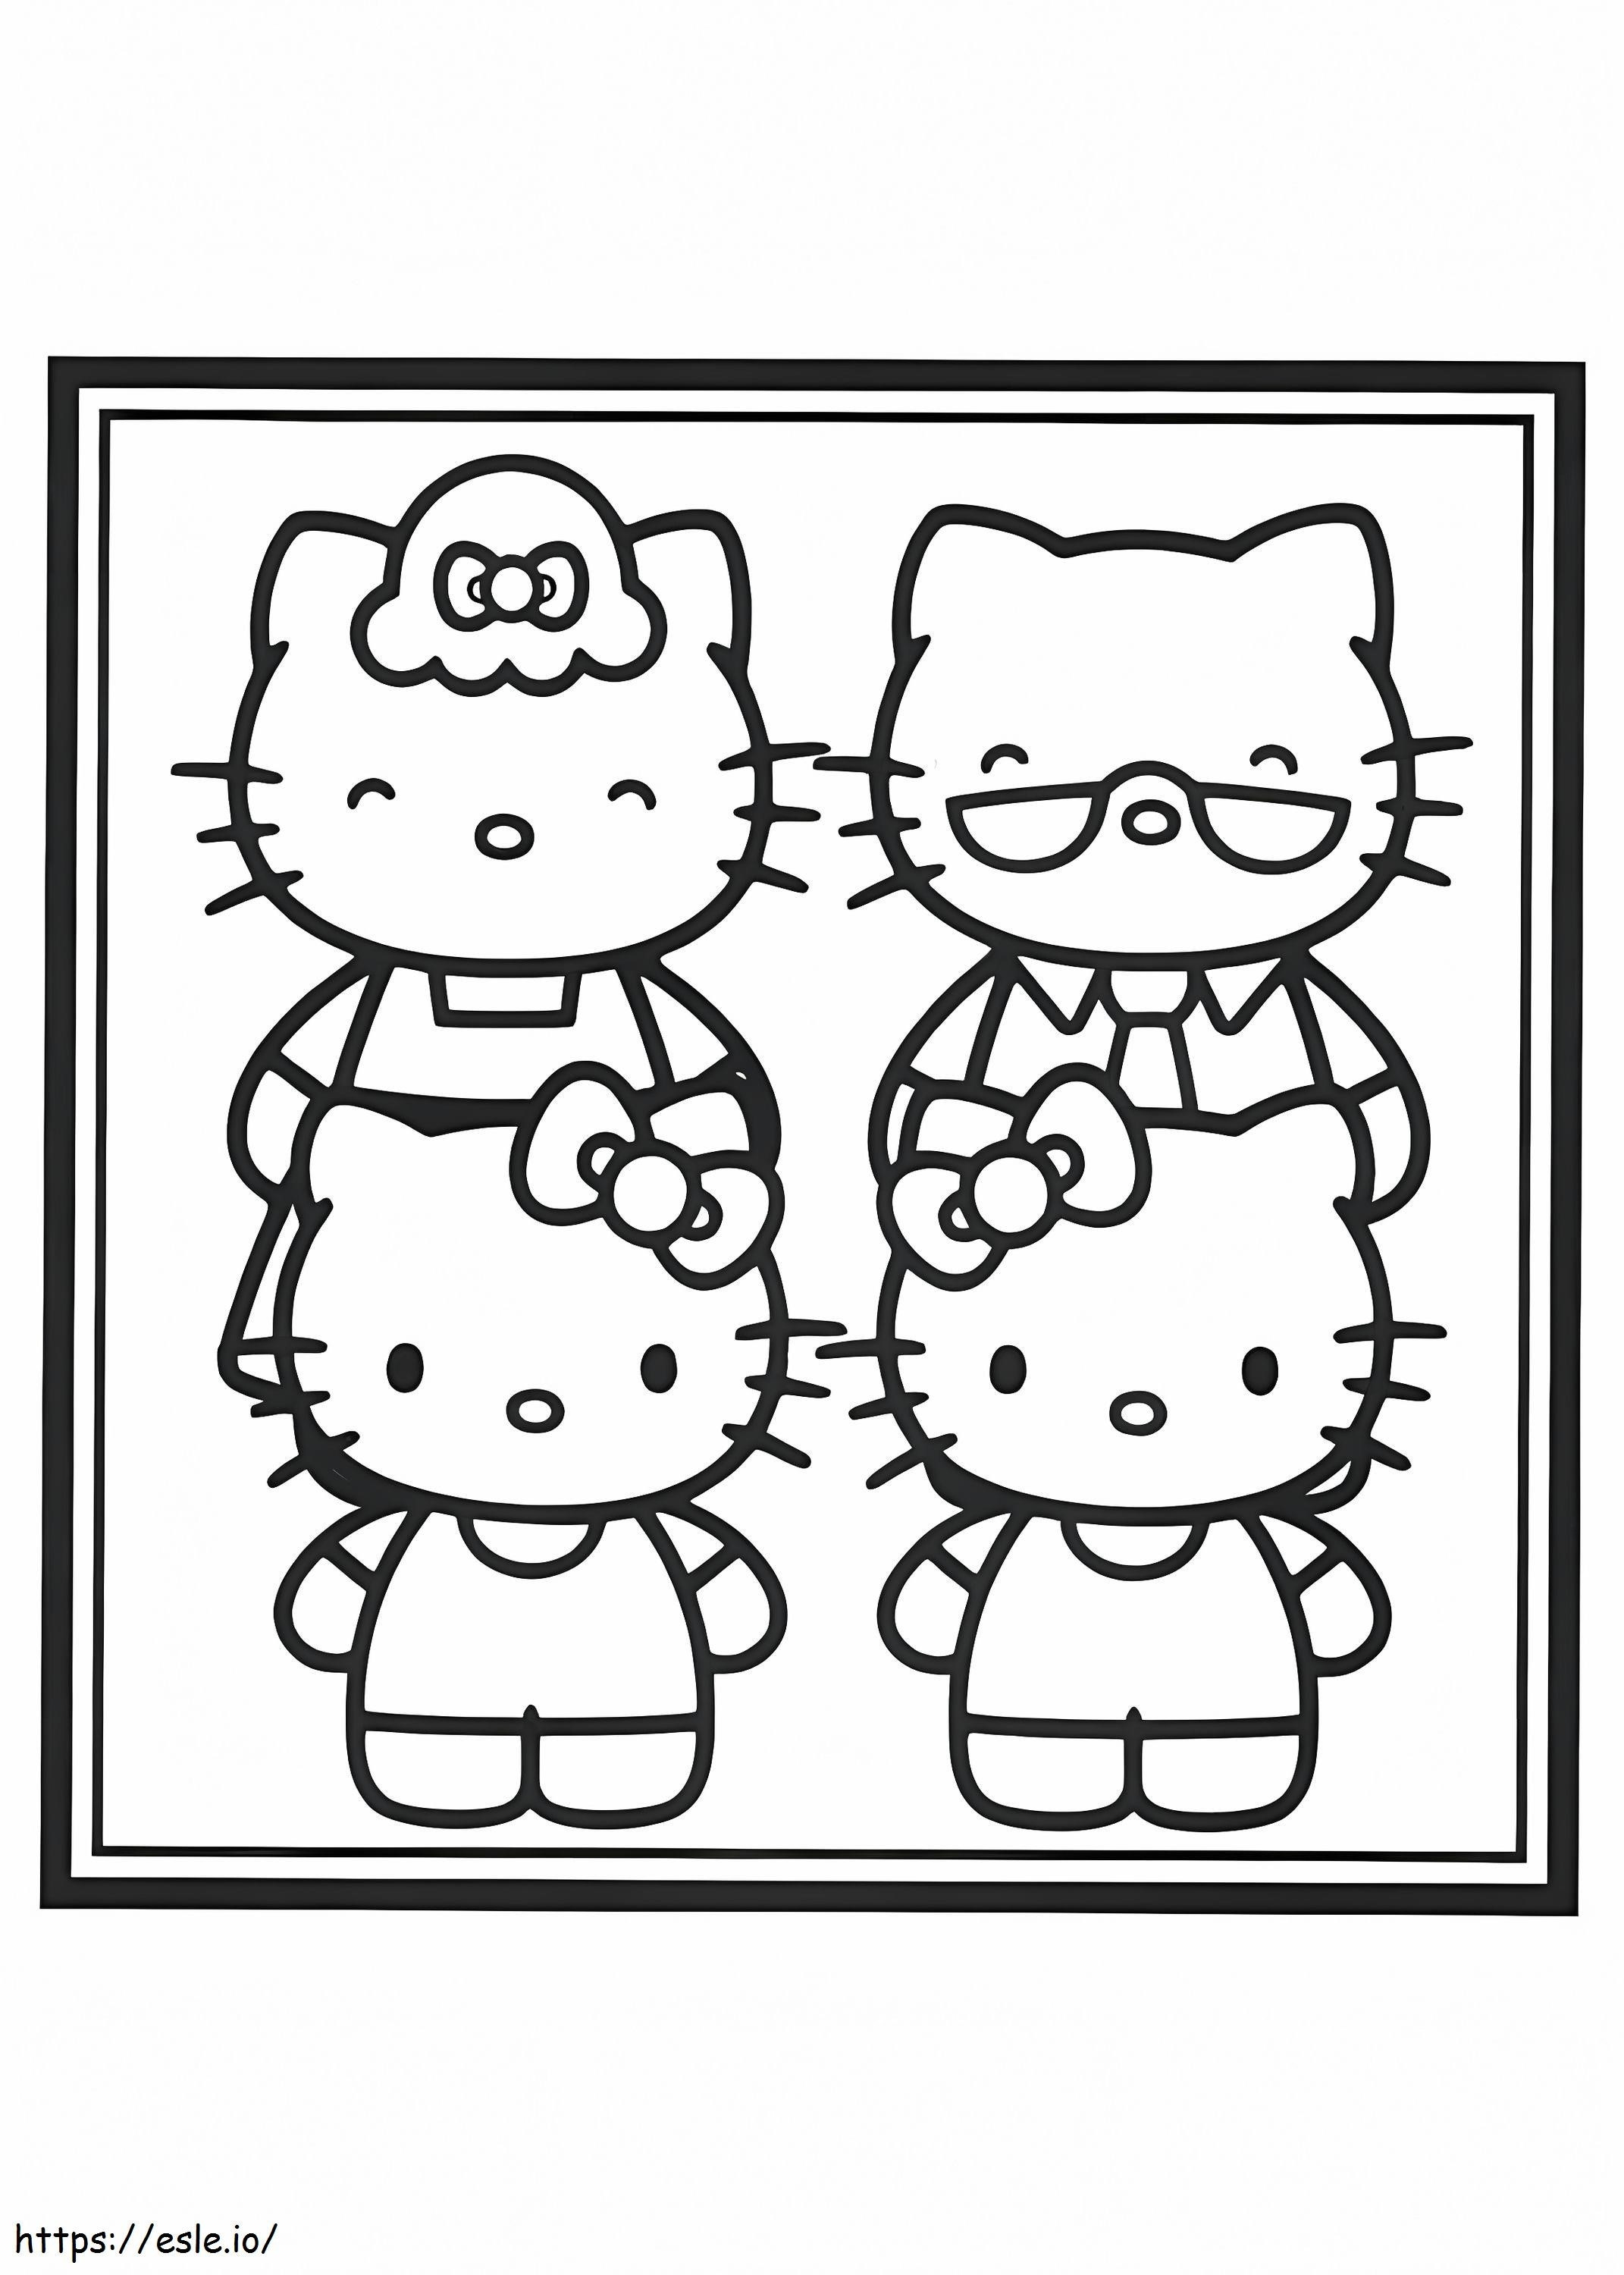 De familiefoto van Hello Kitty kleurplaat kleurplaat